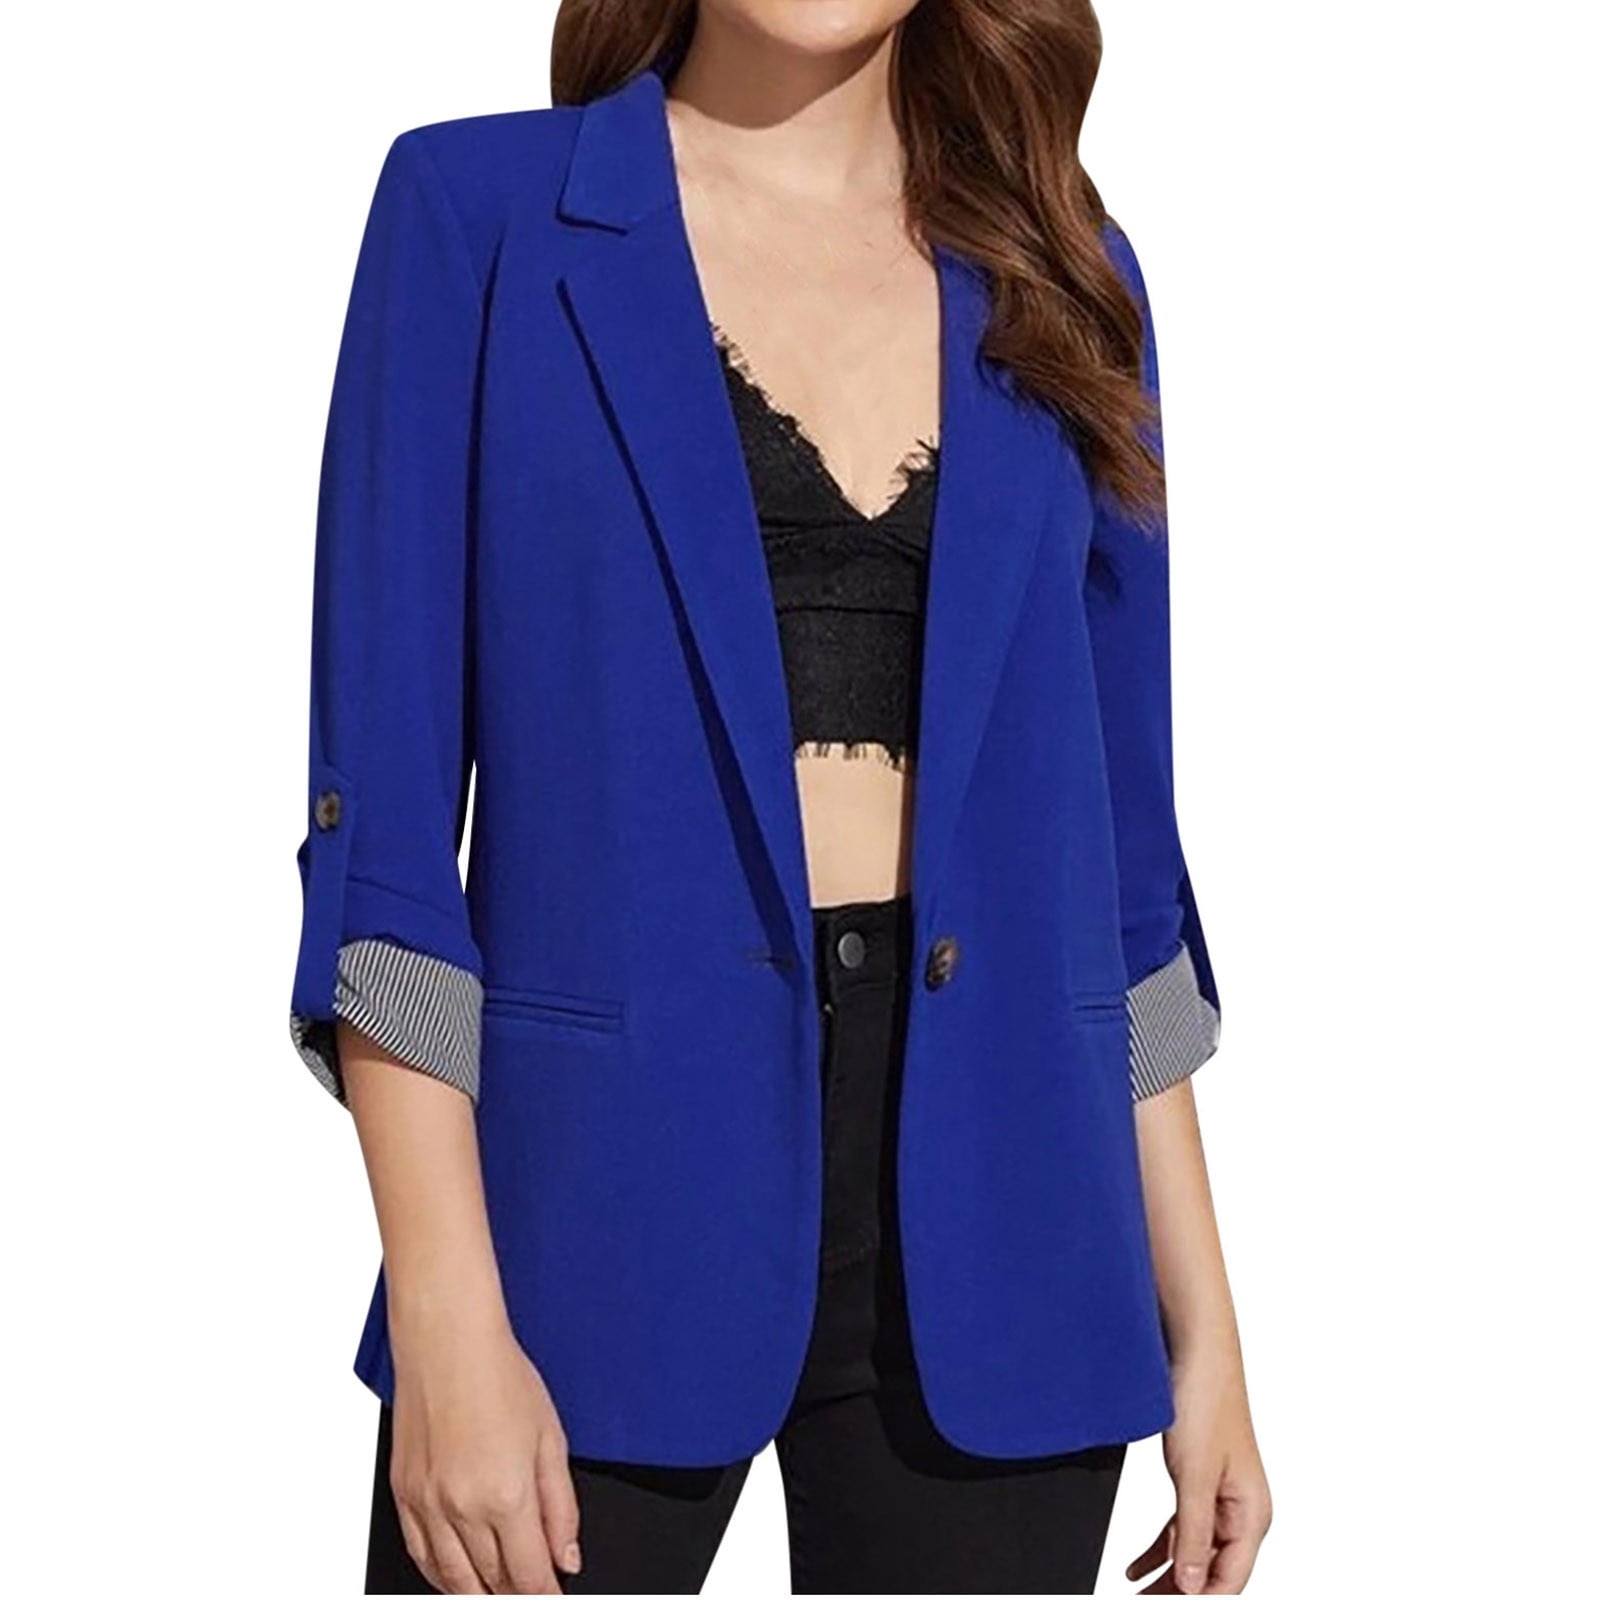 Women Spring Summer Lightweight Elegant Business Work Office Blazer Suit  Jackets | eBay